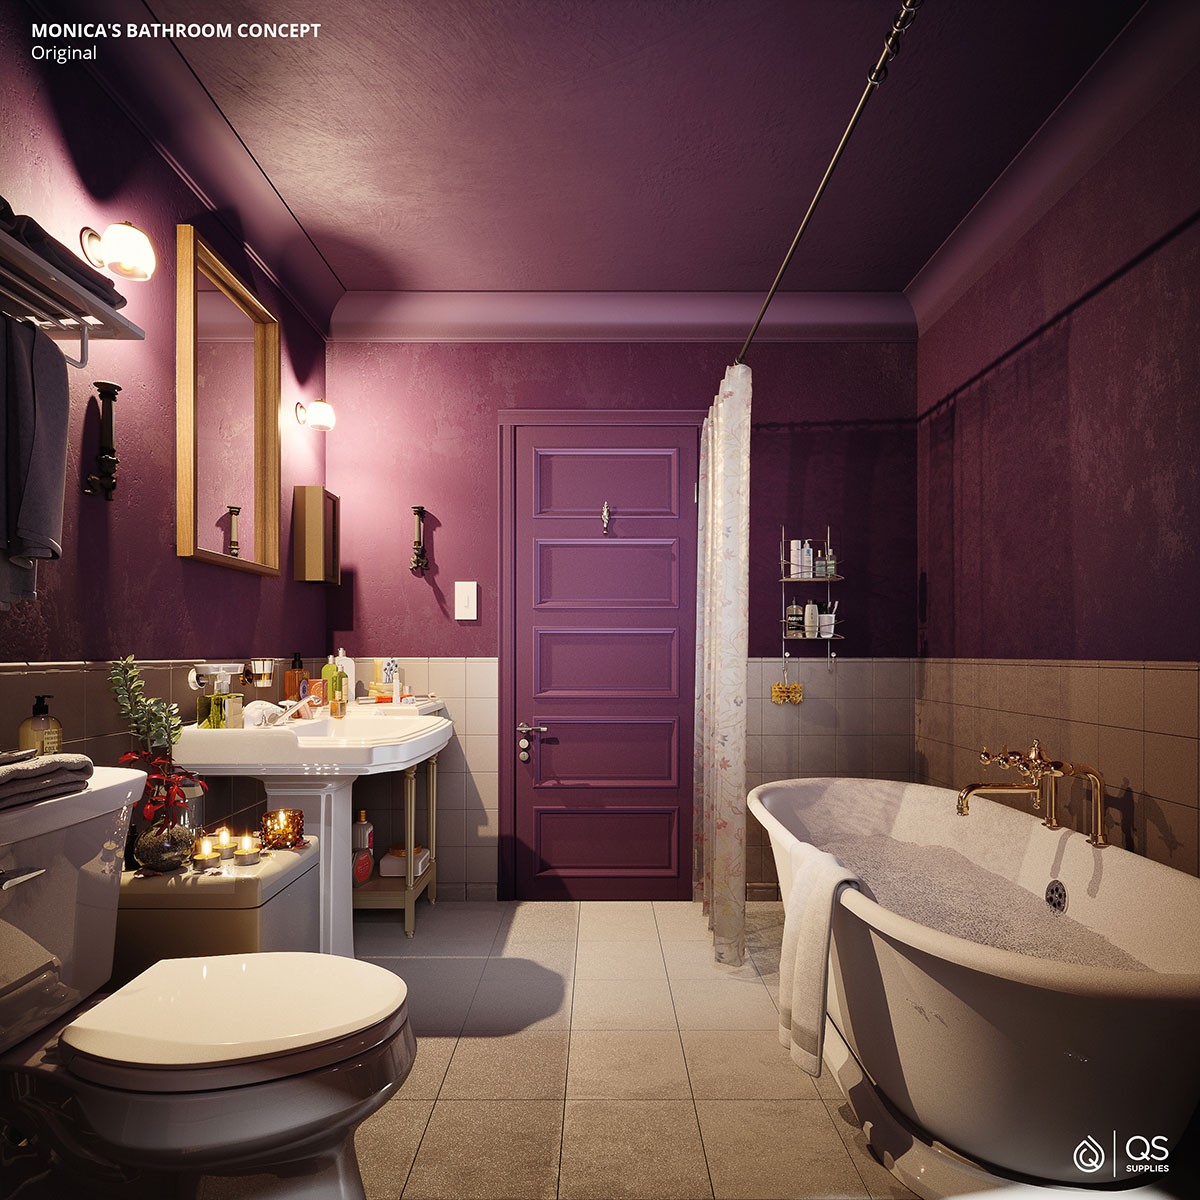 Reprodução do banheiro original do apartamento roxo (Foto: QS Supplies / Divulgação)